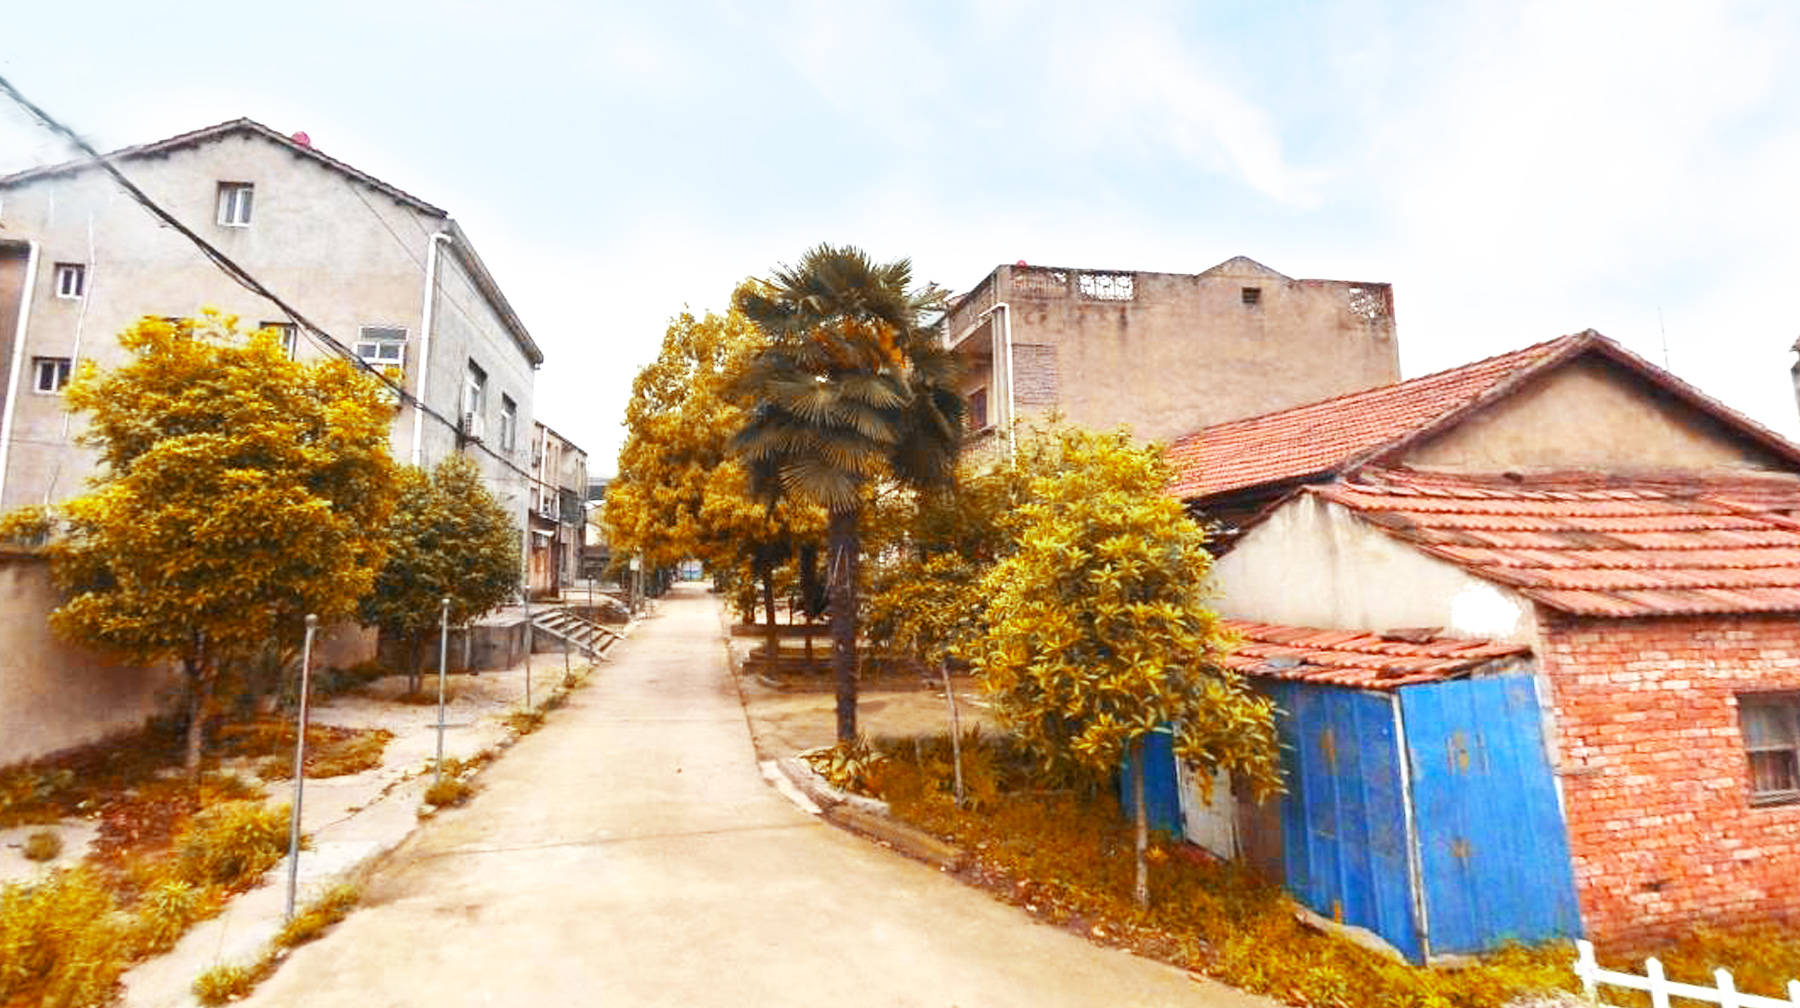 原创武汉郊区有座渔门村:建在汉江堤坝下,300多栋民房布局如小镇